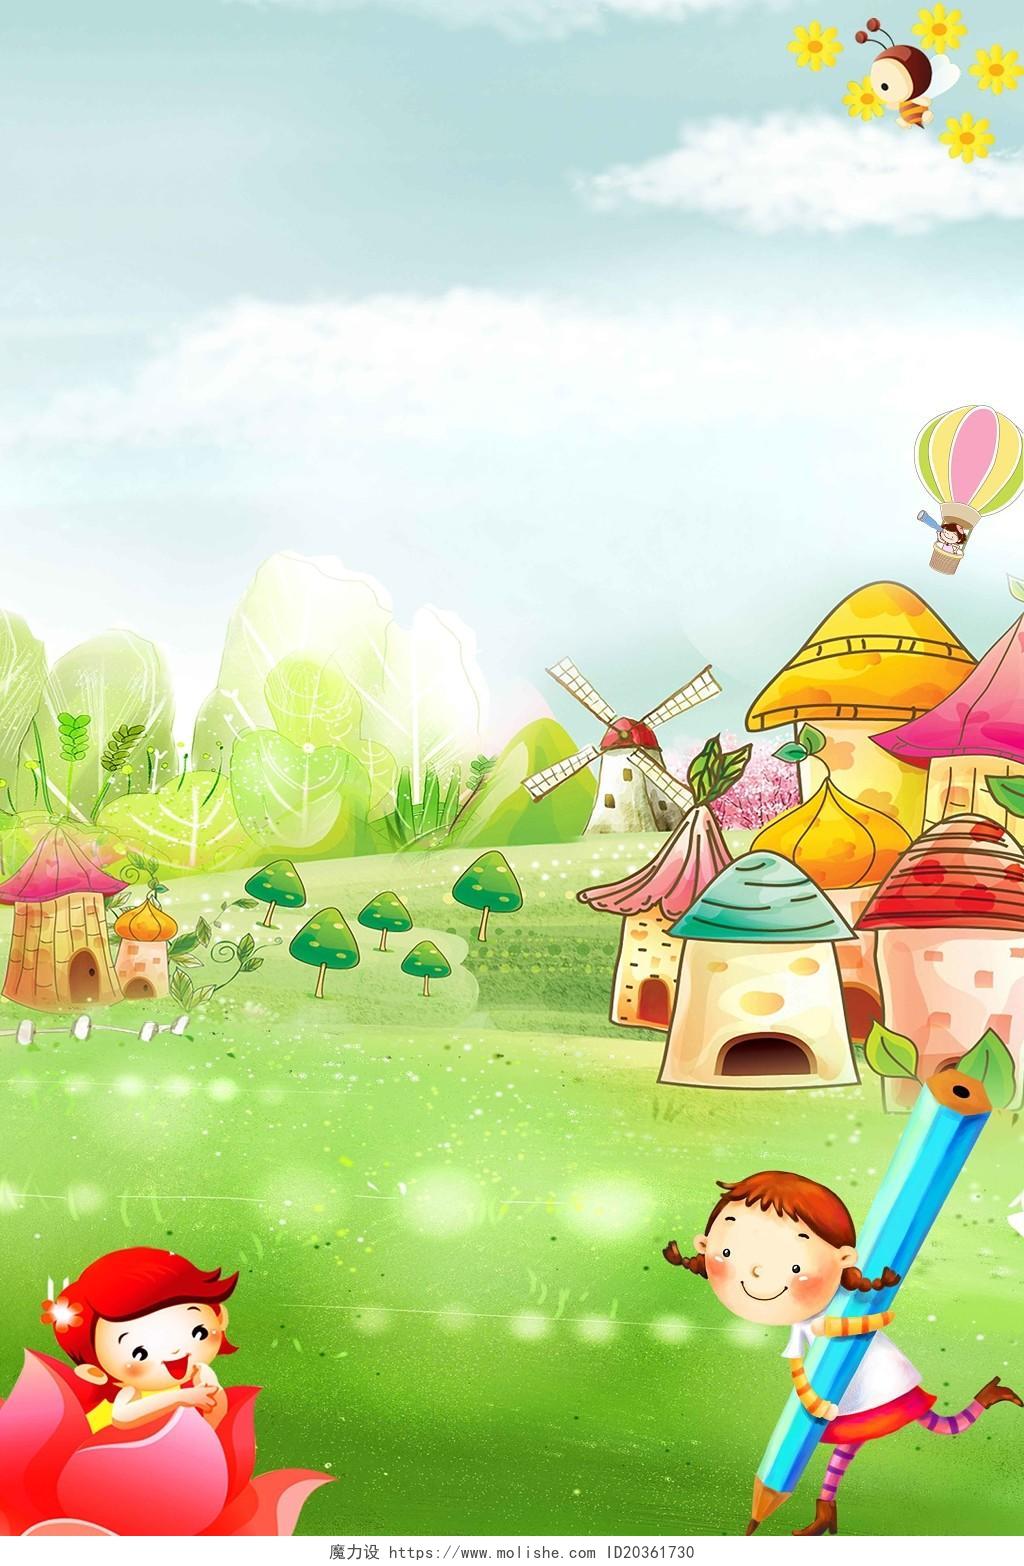 花草树木蘑菇五彩手绘风景幼儿园招生培训卡通儿童海报背景